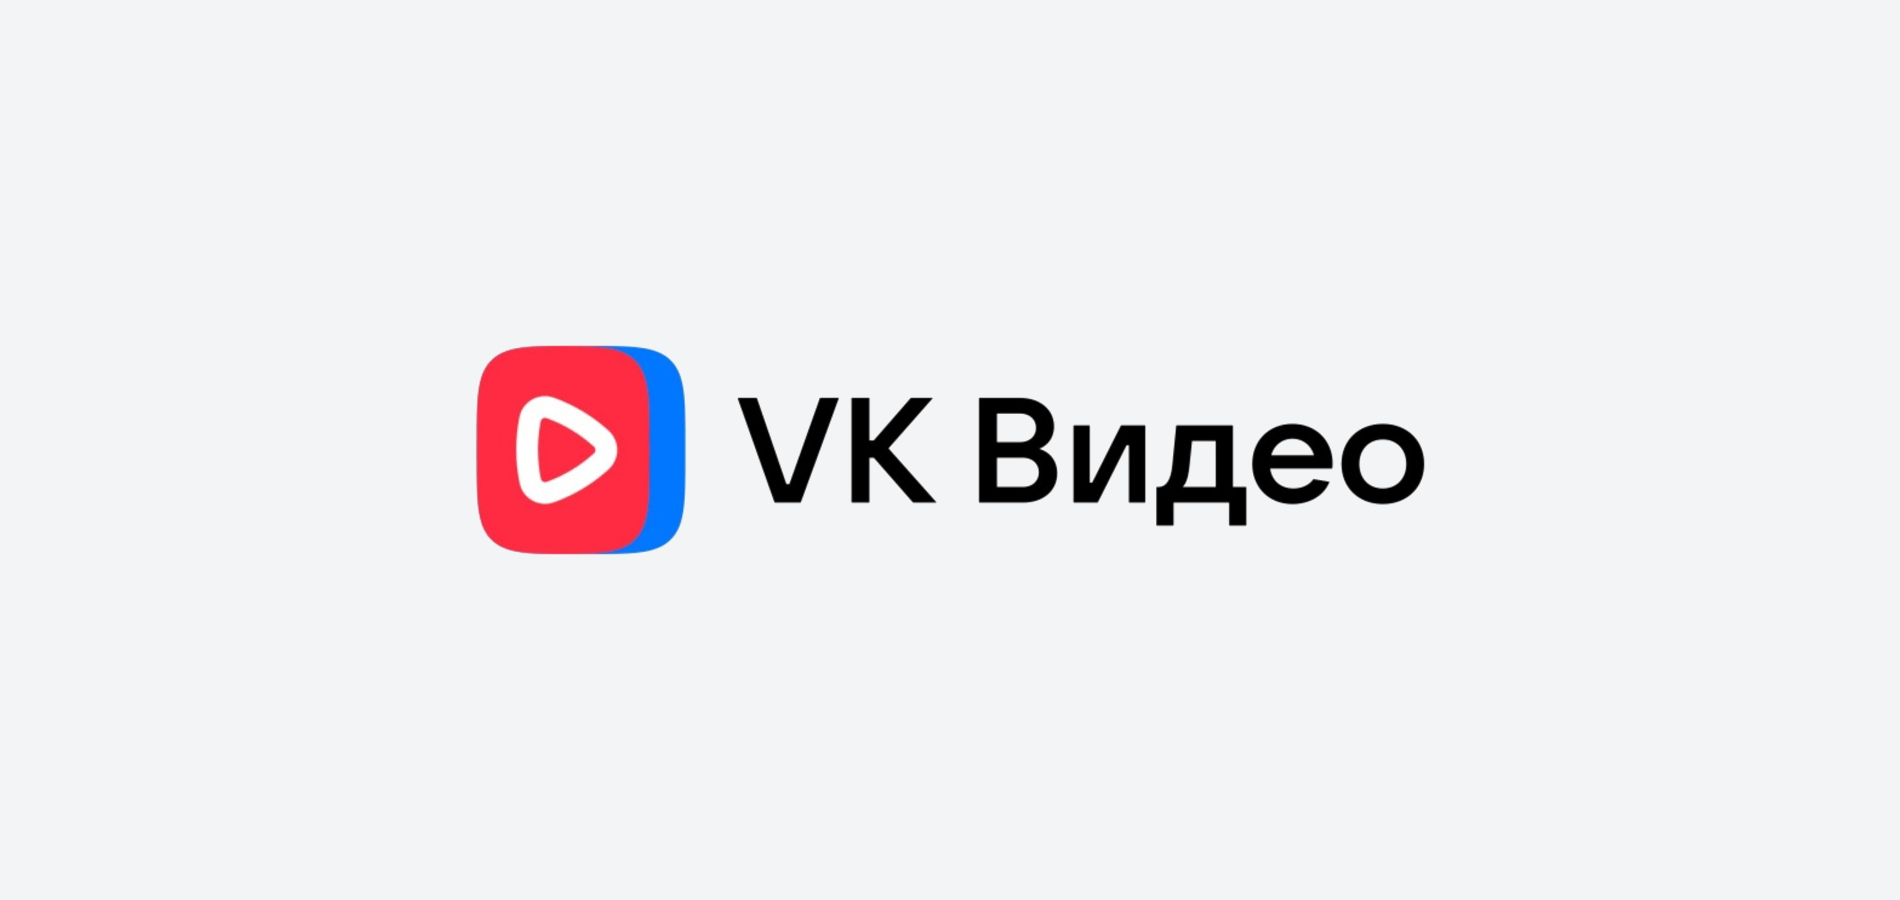 ВКонтакте представляет обновление VK Видео для мобильных браузеров